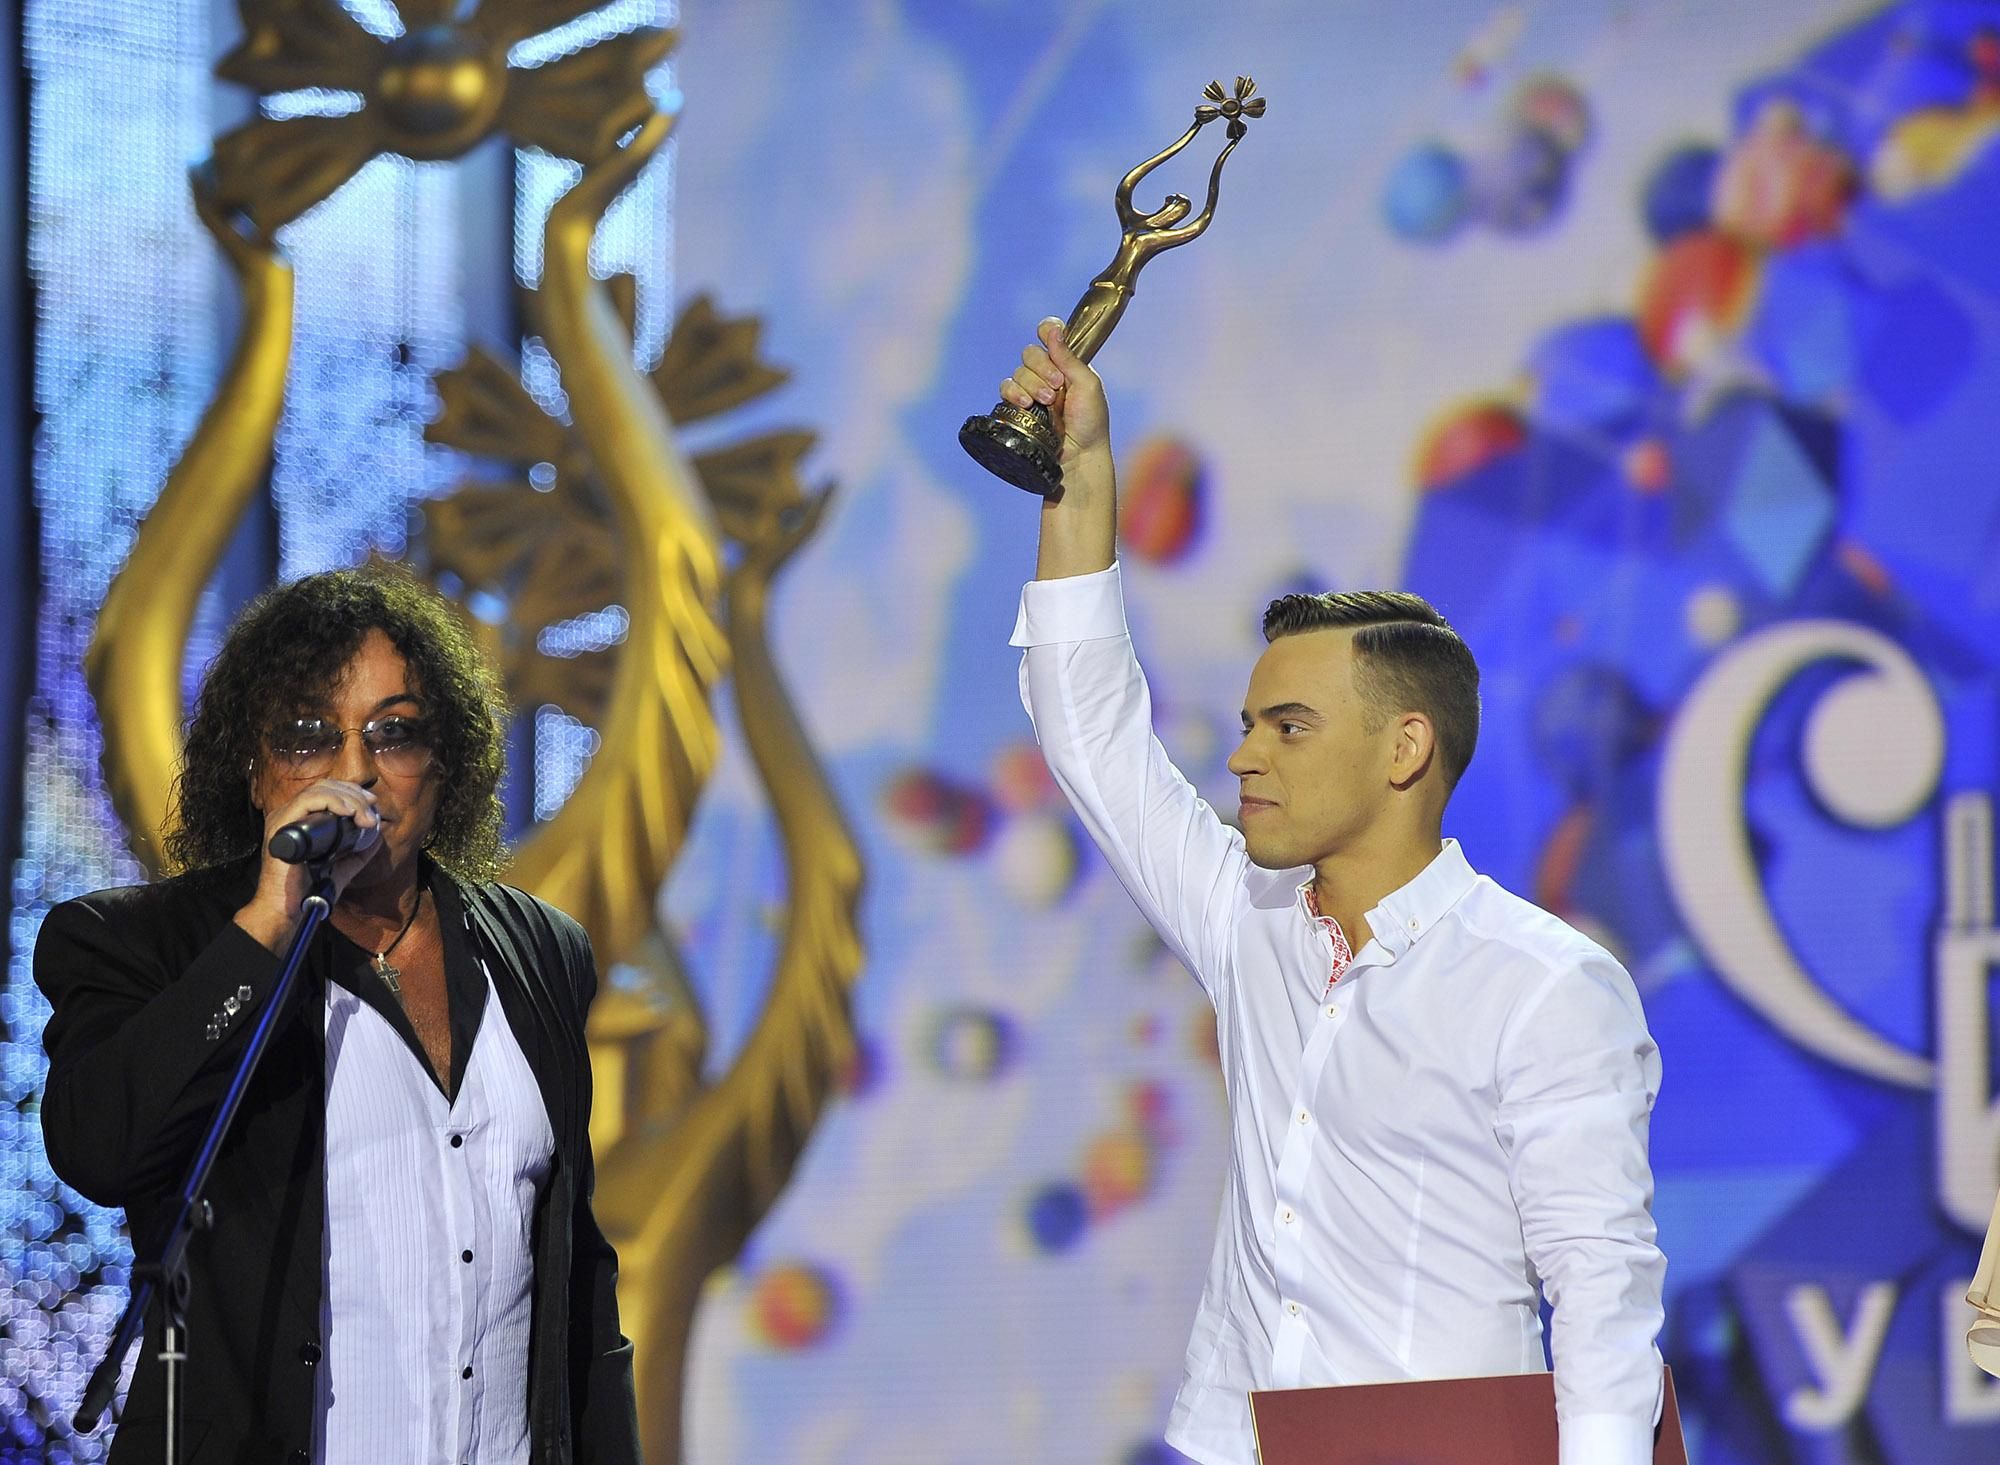 Председатель жюри Валерий Леонтьев вручает Гран-при Алексею Гроссу. Фото http://fest-sbv.by